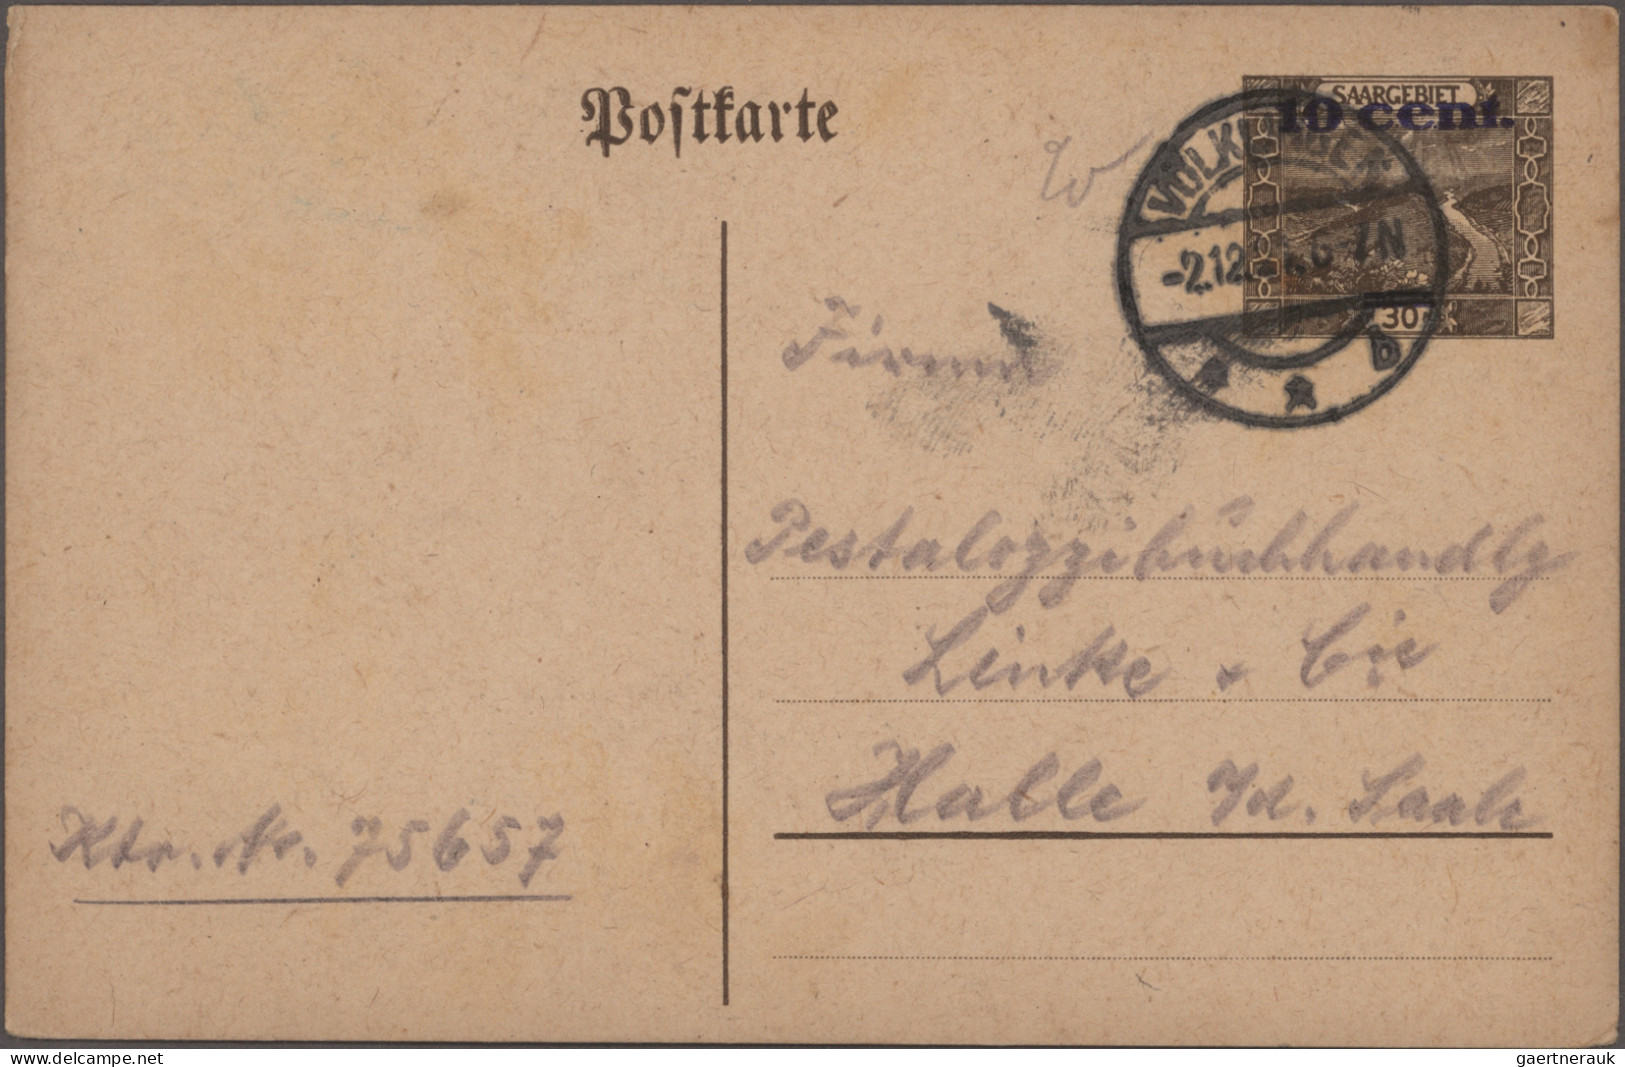 Deutsche Abstimmungsgebiete: Saargebiet - Ganzsachen: 1920-1933 Kollektion von m